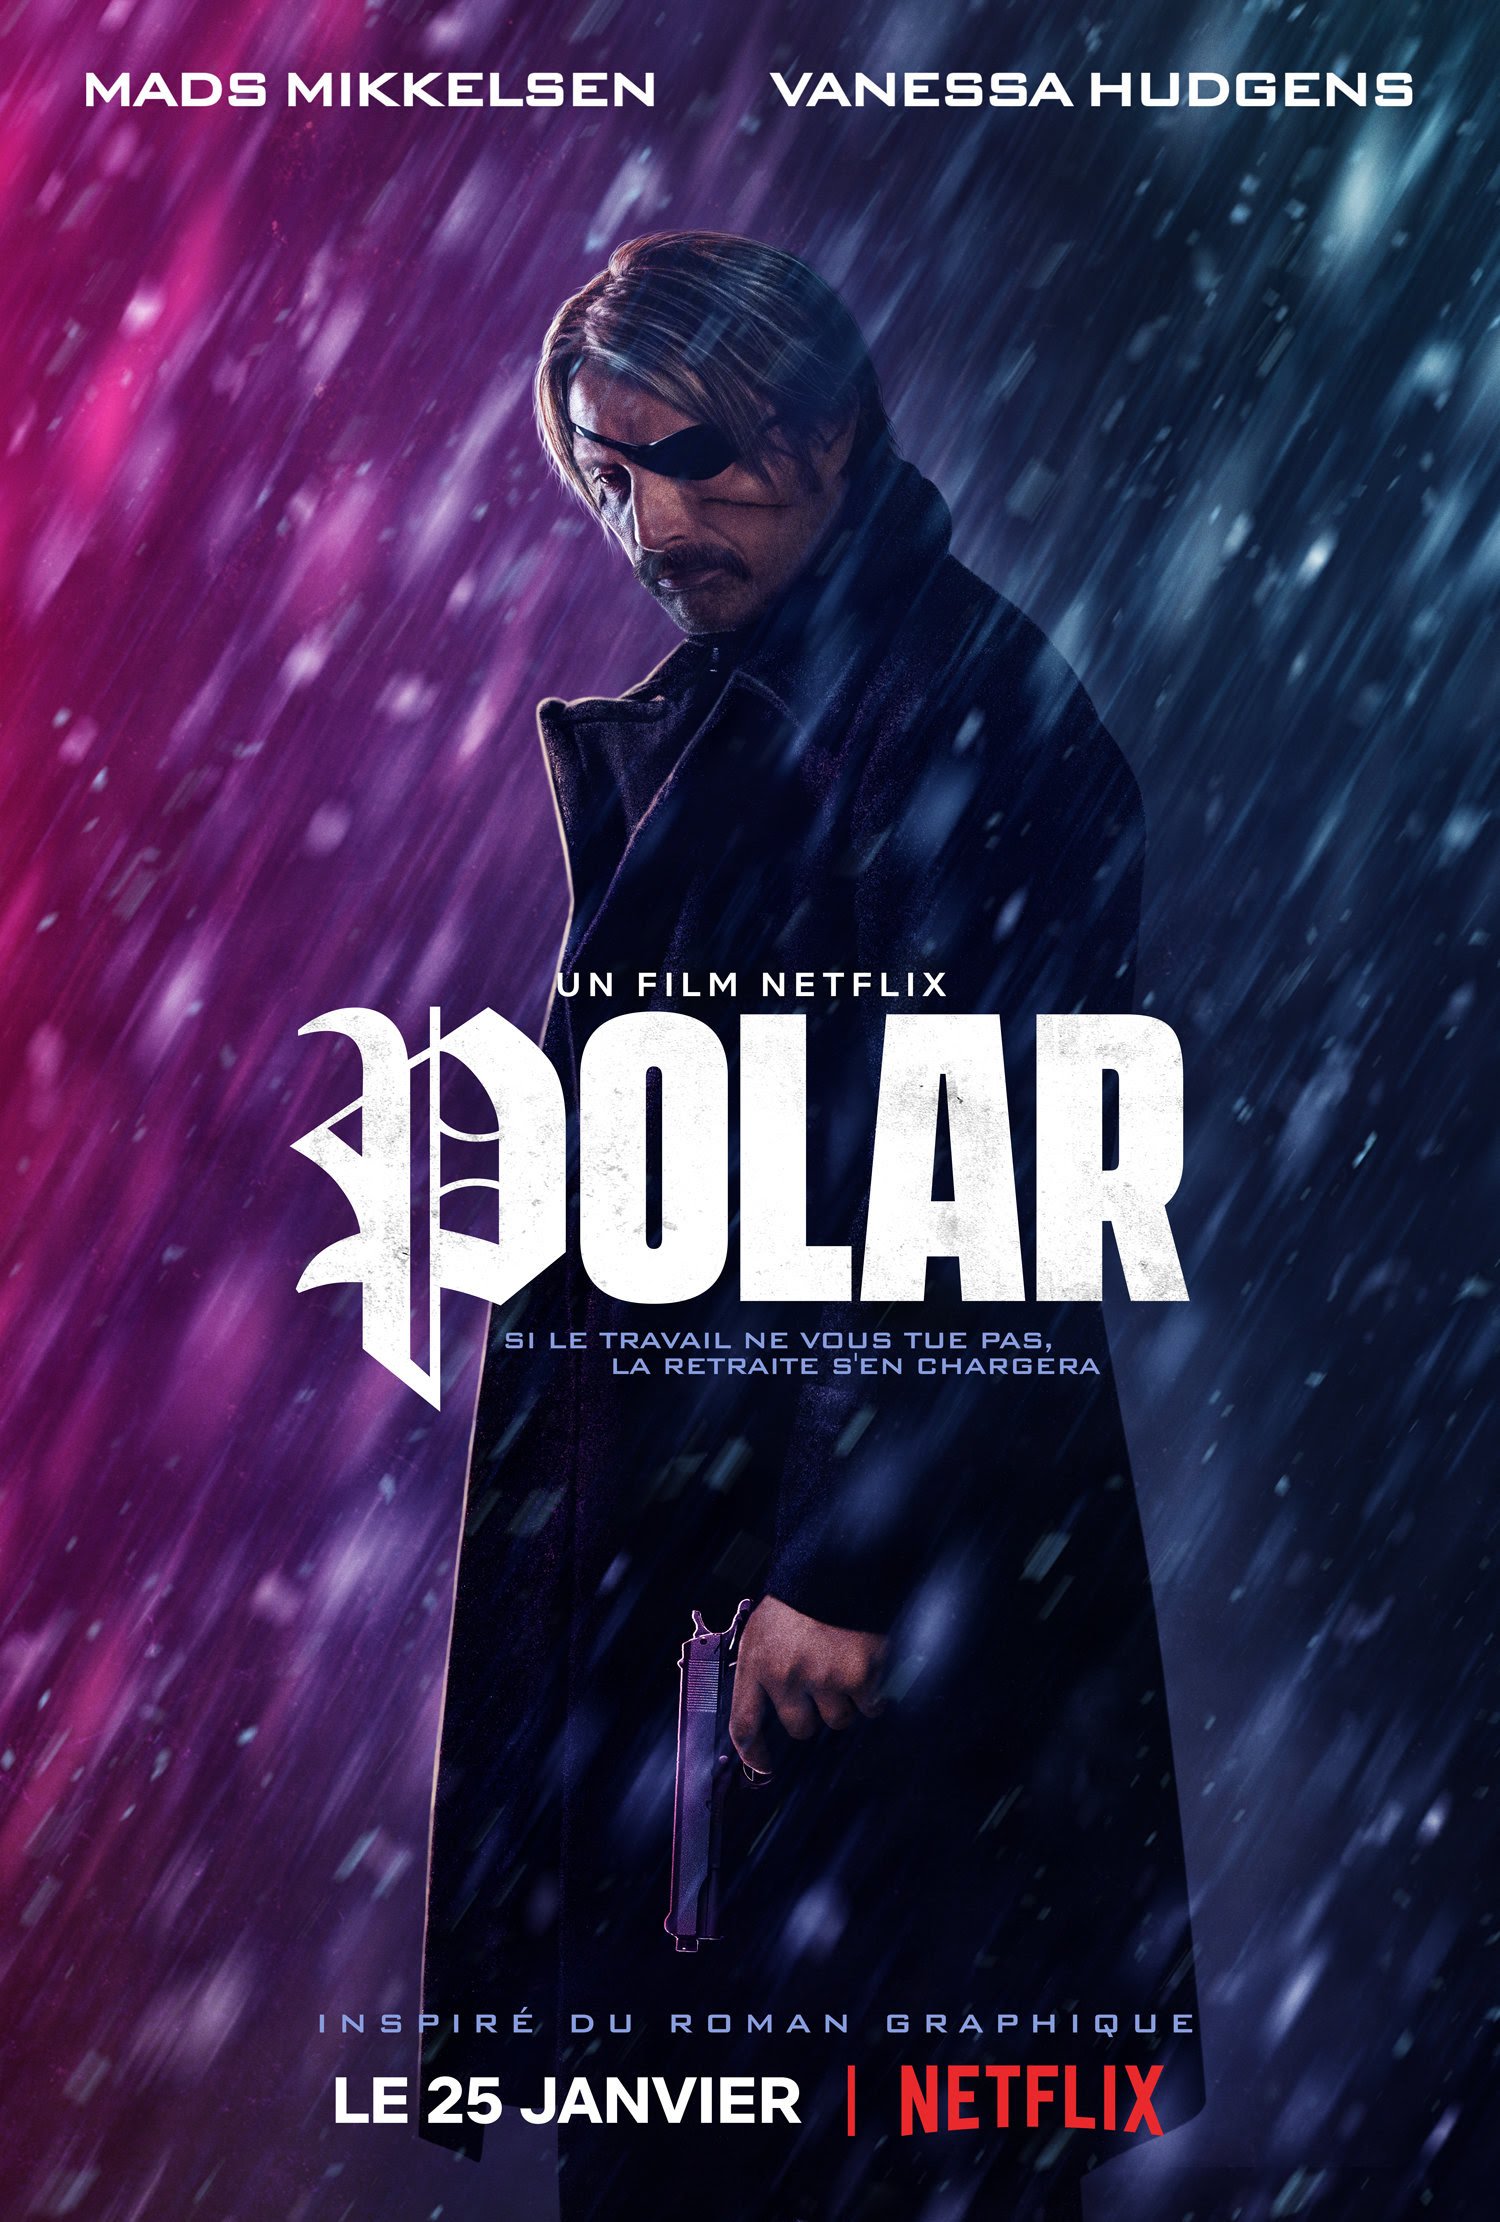 Netflix divulga trailer de Polar, filme baseado em quadrinhos